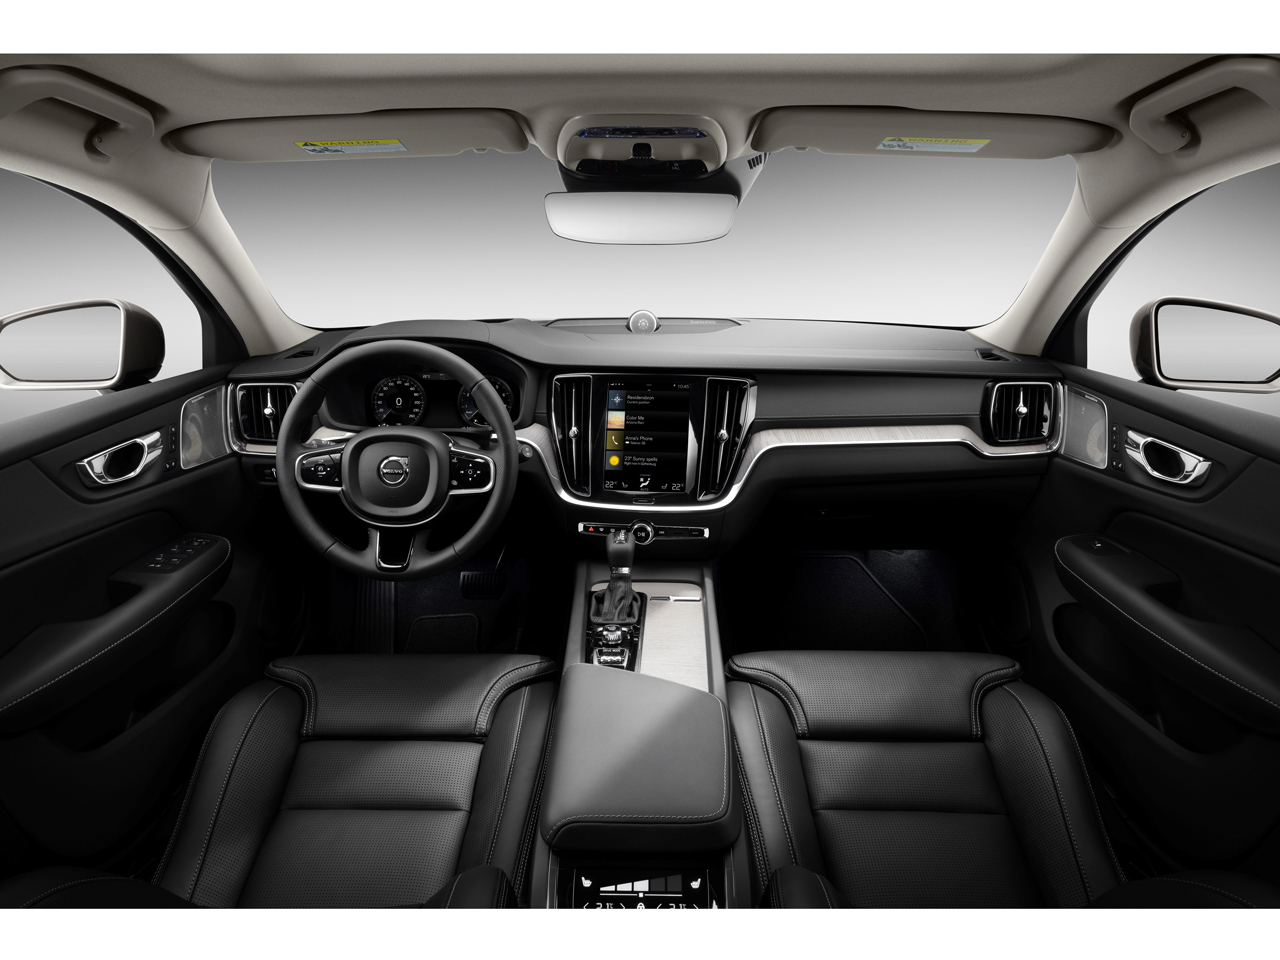 ボルボ V60 クロスカントリー 2019年モデル T5 AWDの価格・性能・装備